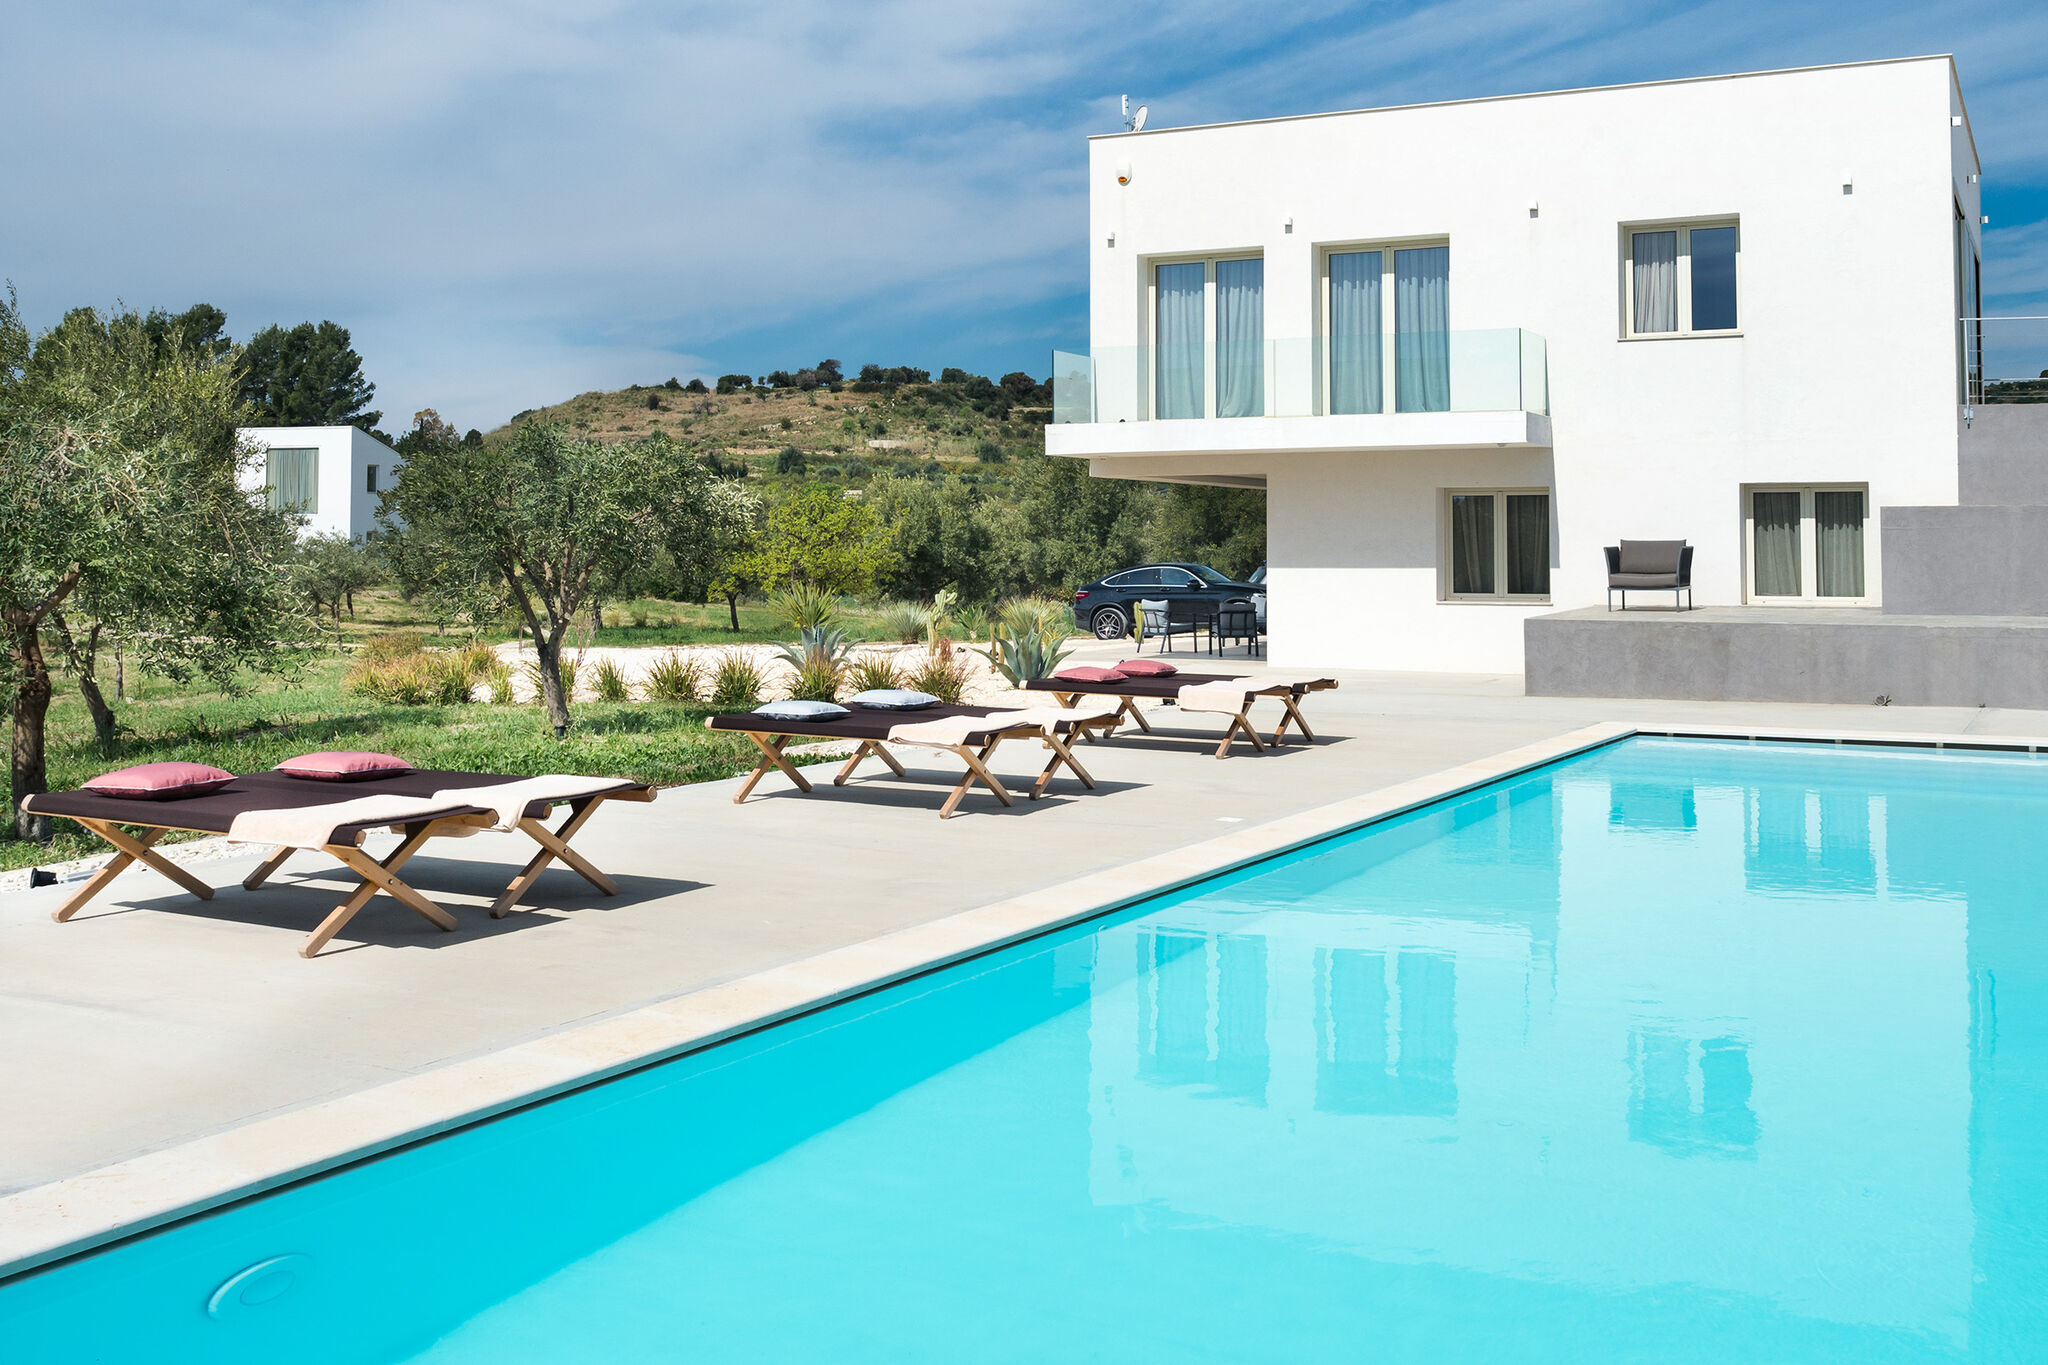 Luxe villa in de buurt van Noto met panoramische ligging